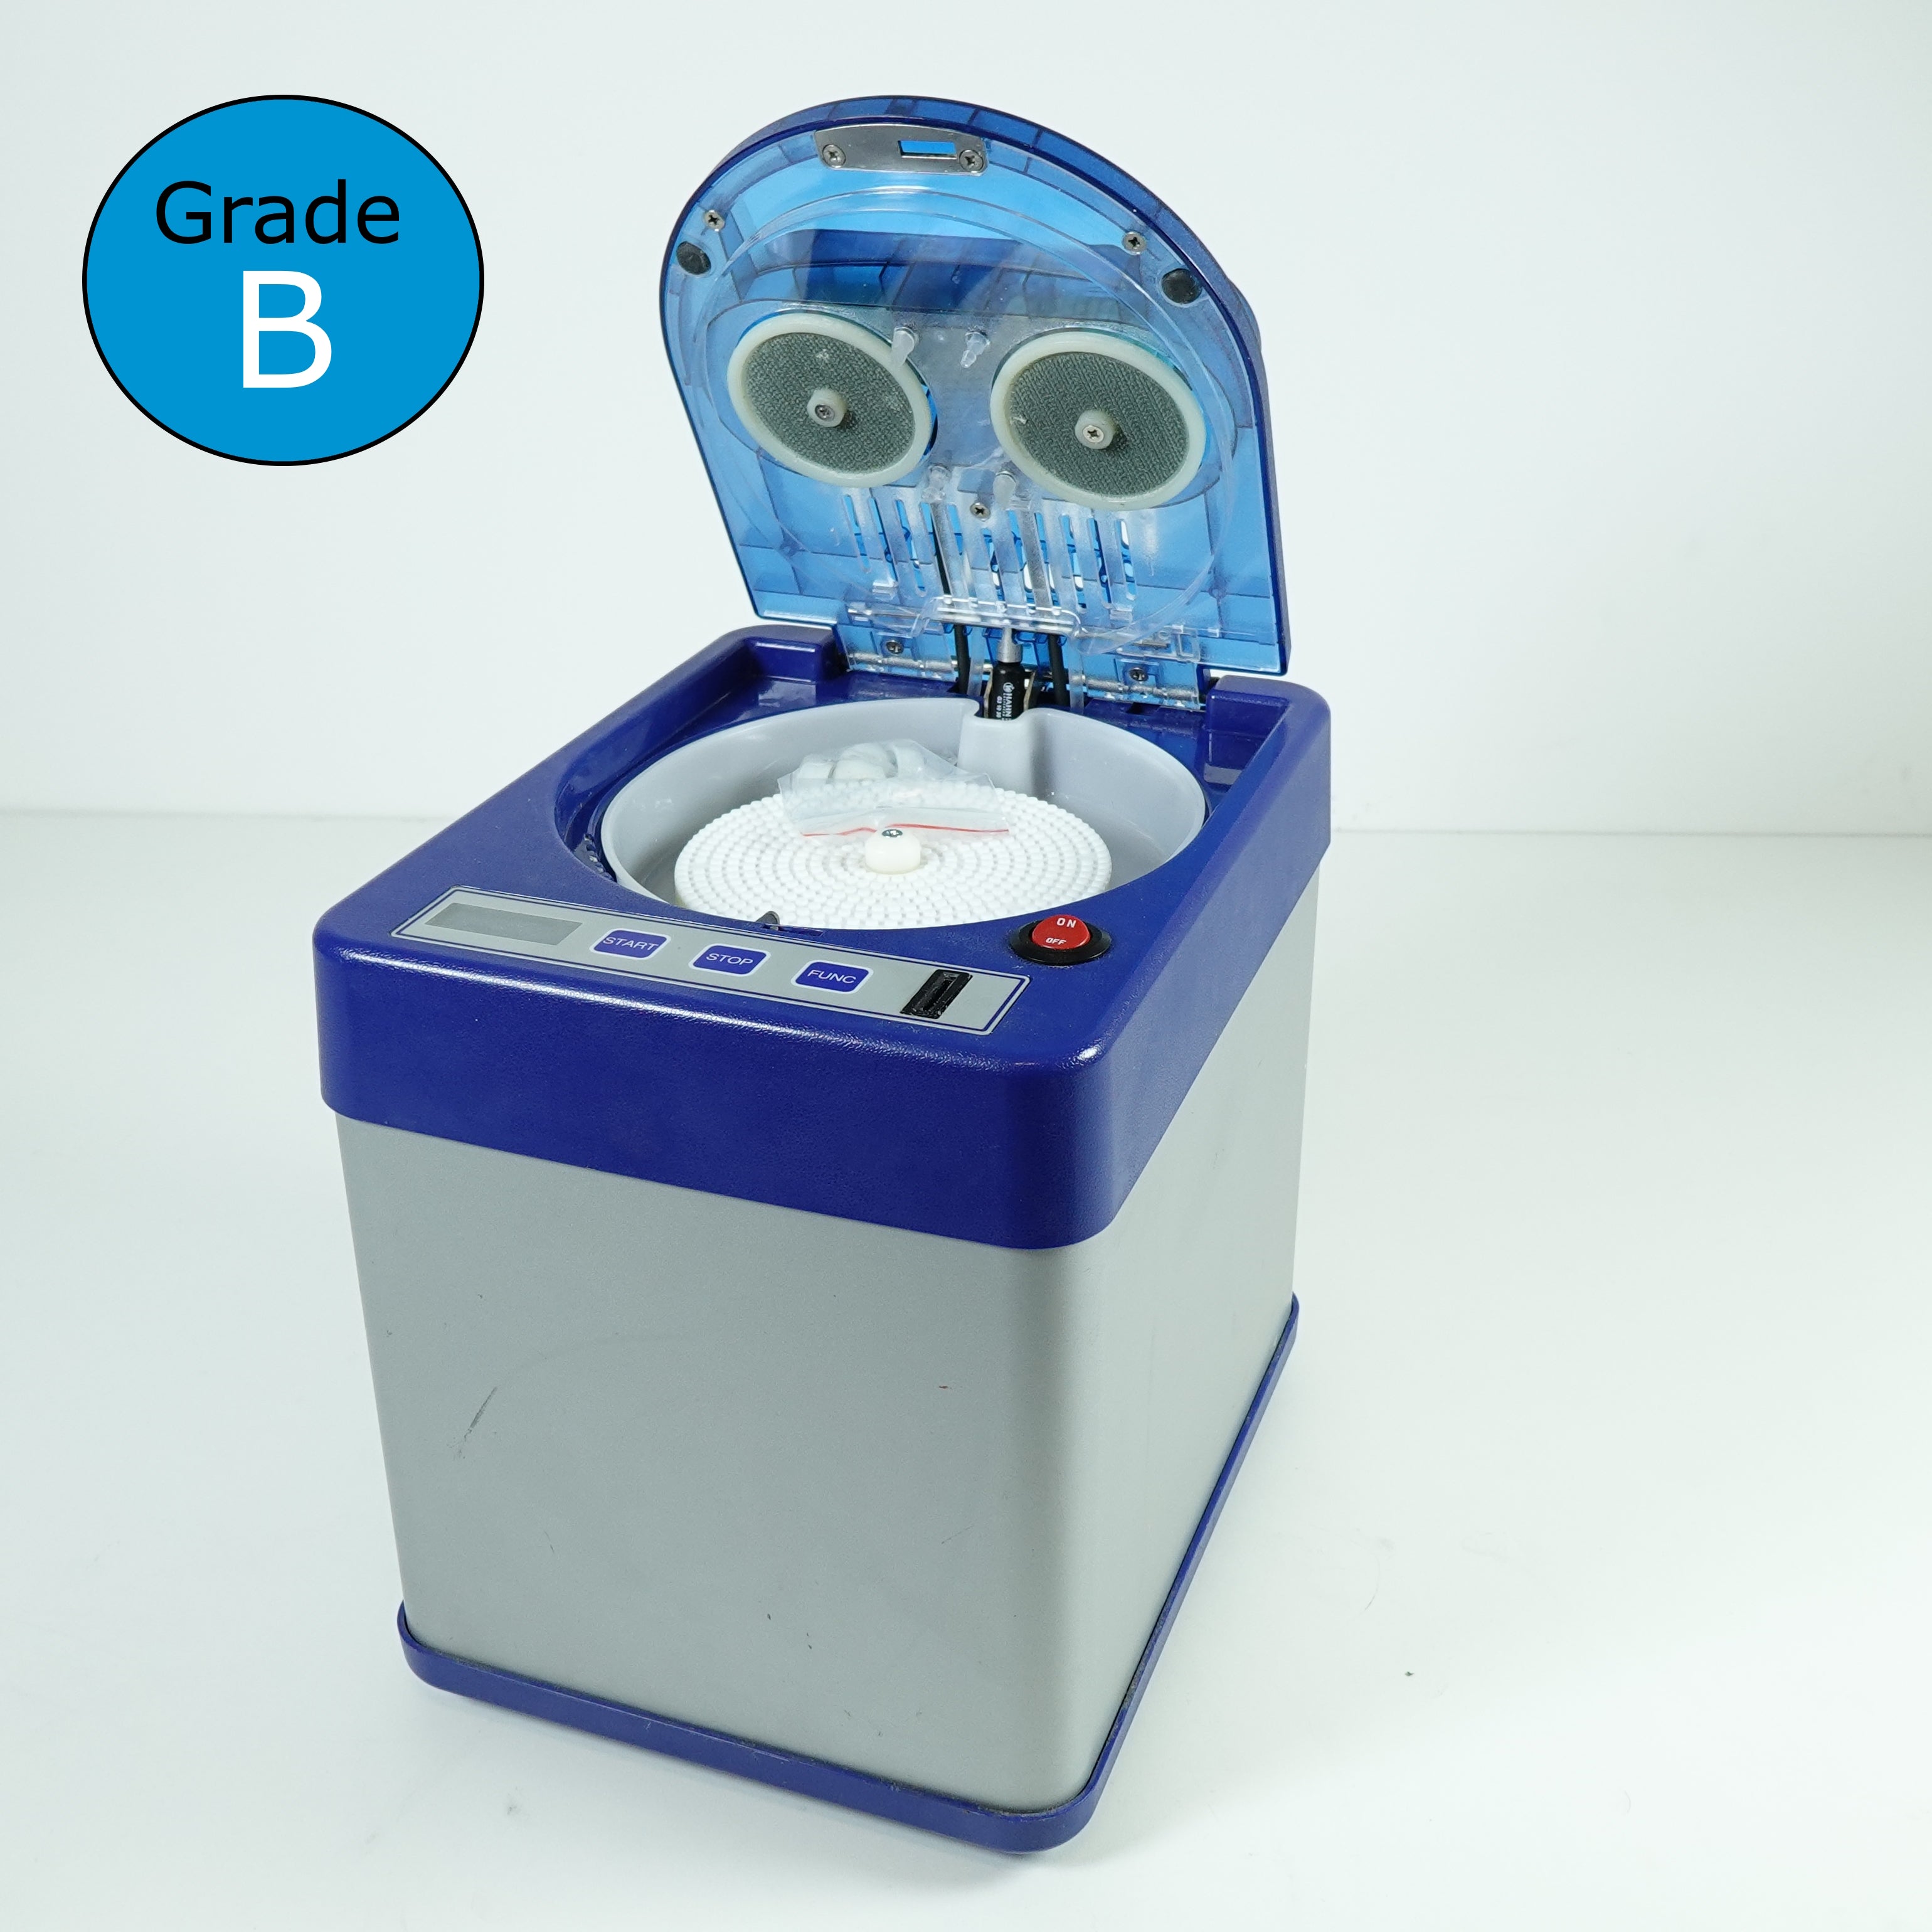 Eco Pro 2.0 Machine (Reconditioned) - Grade B